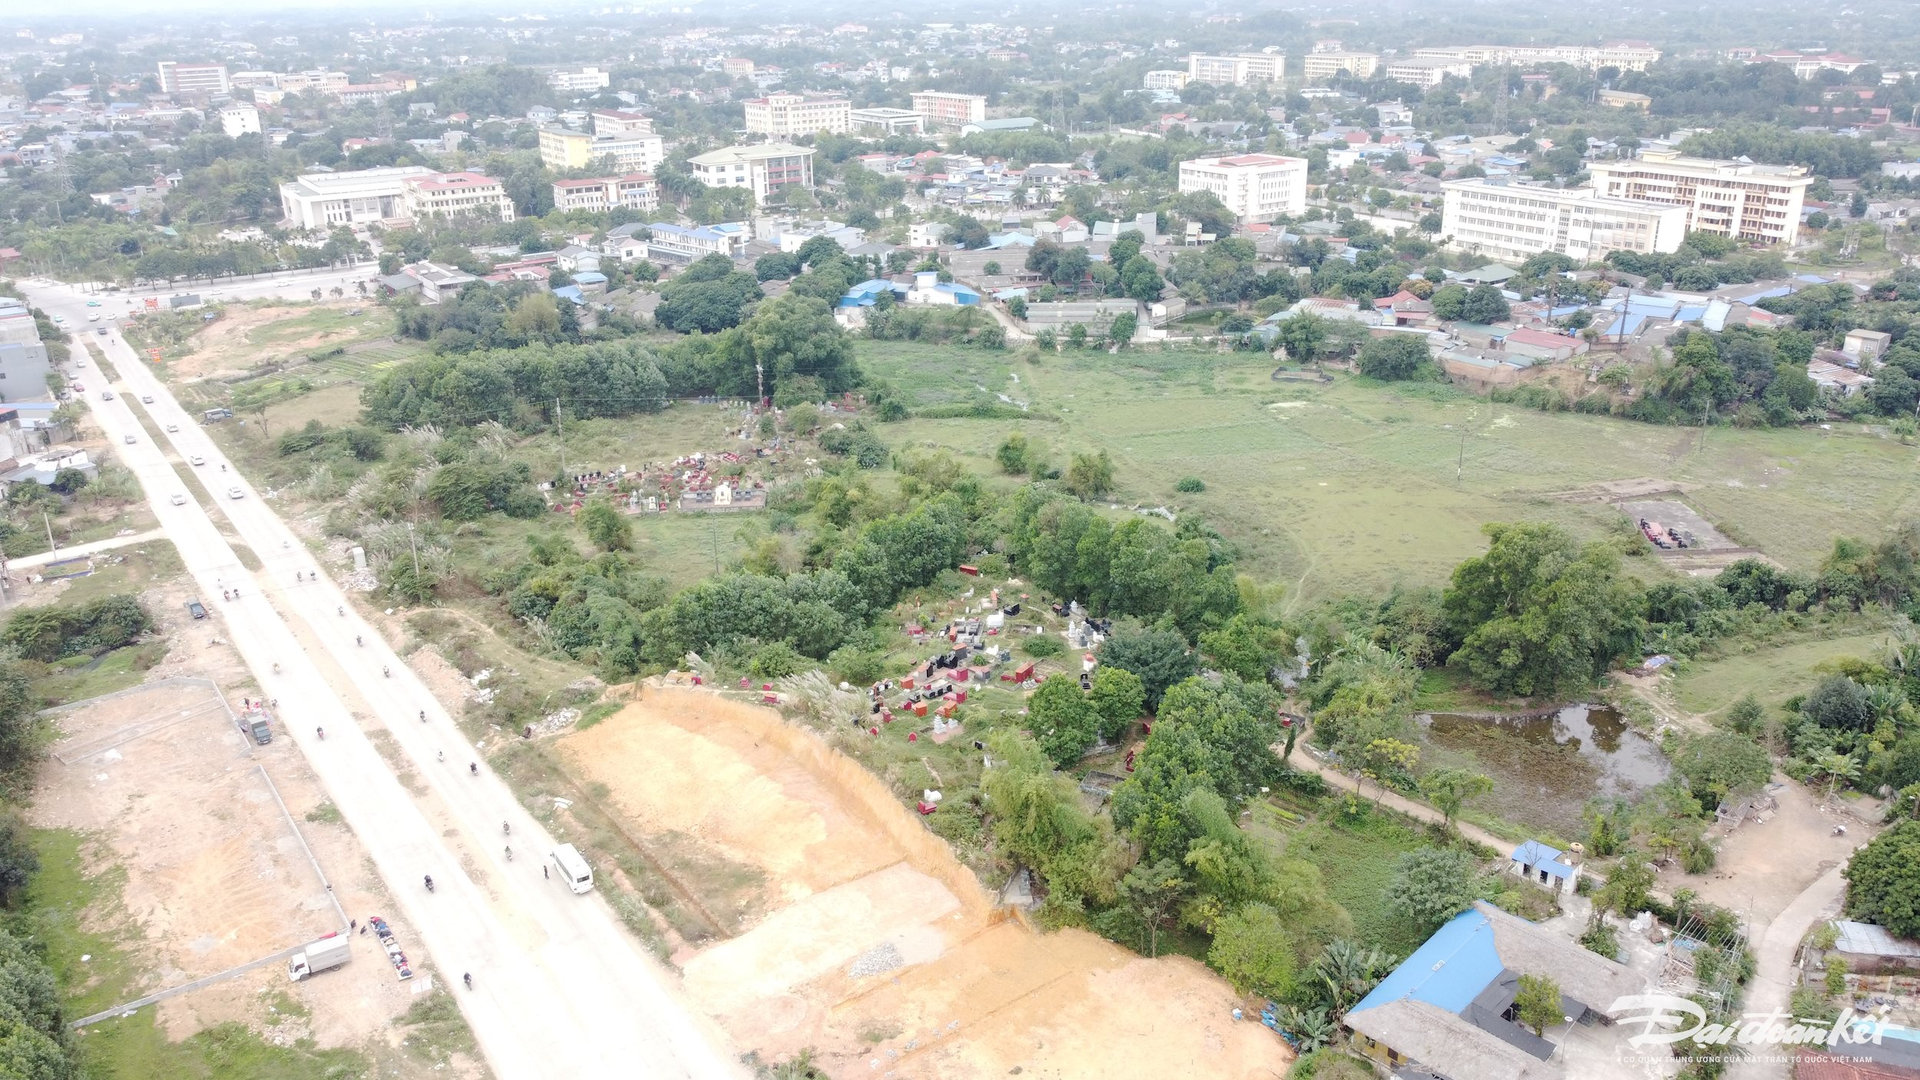 Đất quy hoạch cho Đại học Thái Nguyên có thể bị điều chỉnh sang dự án khả thi hơn?